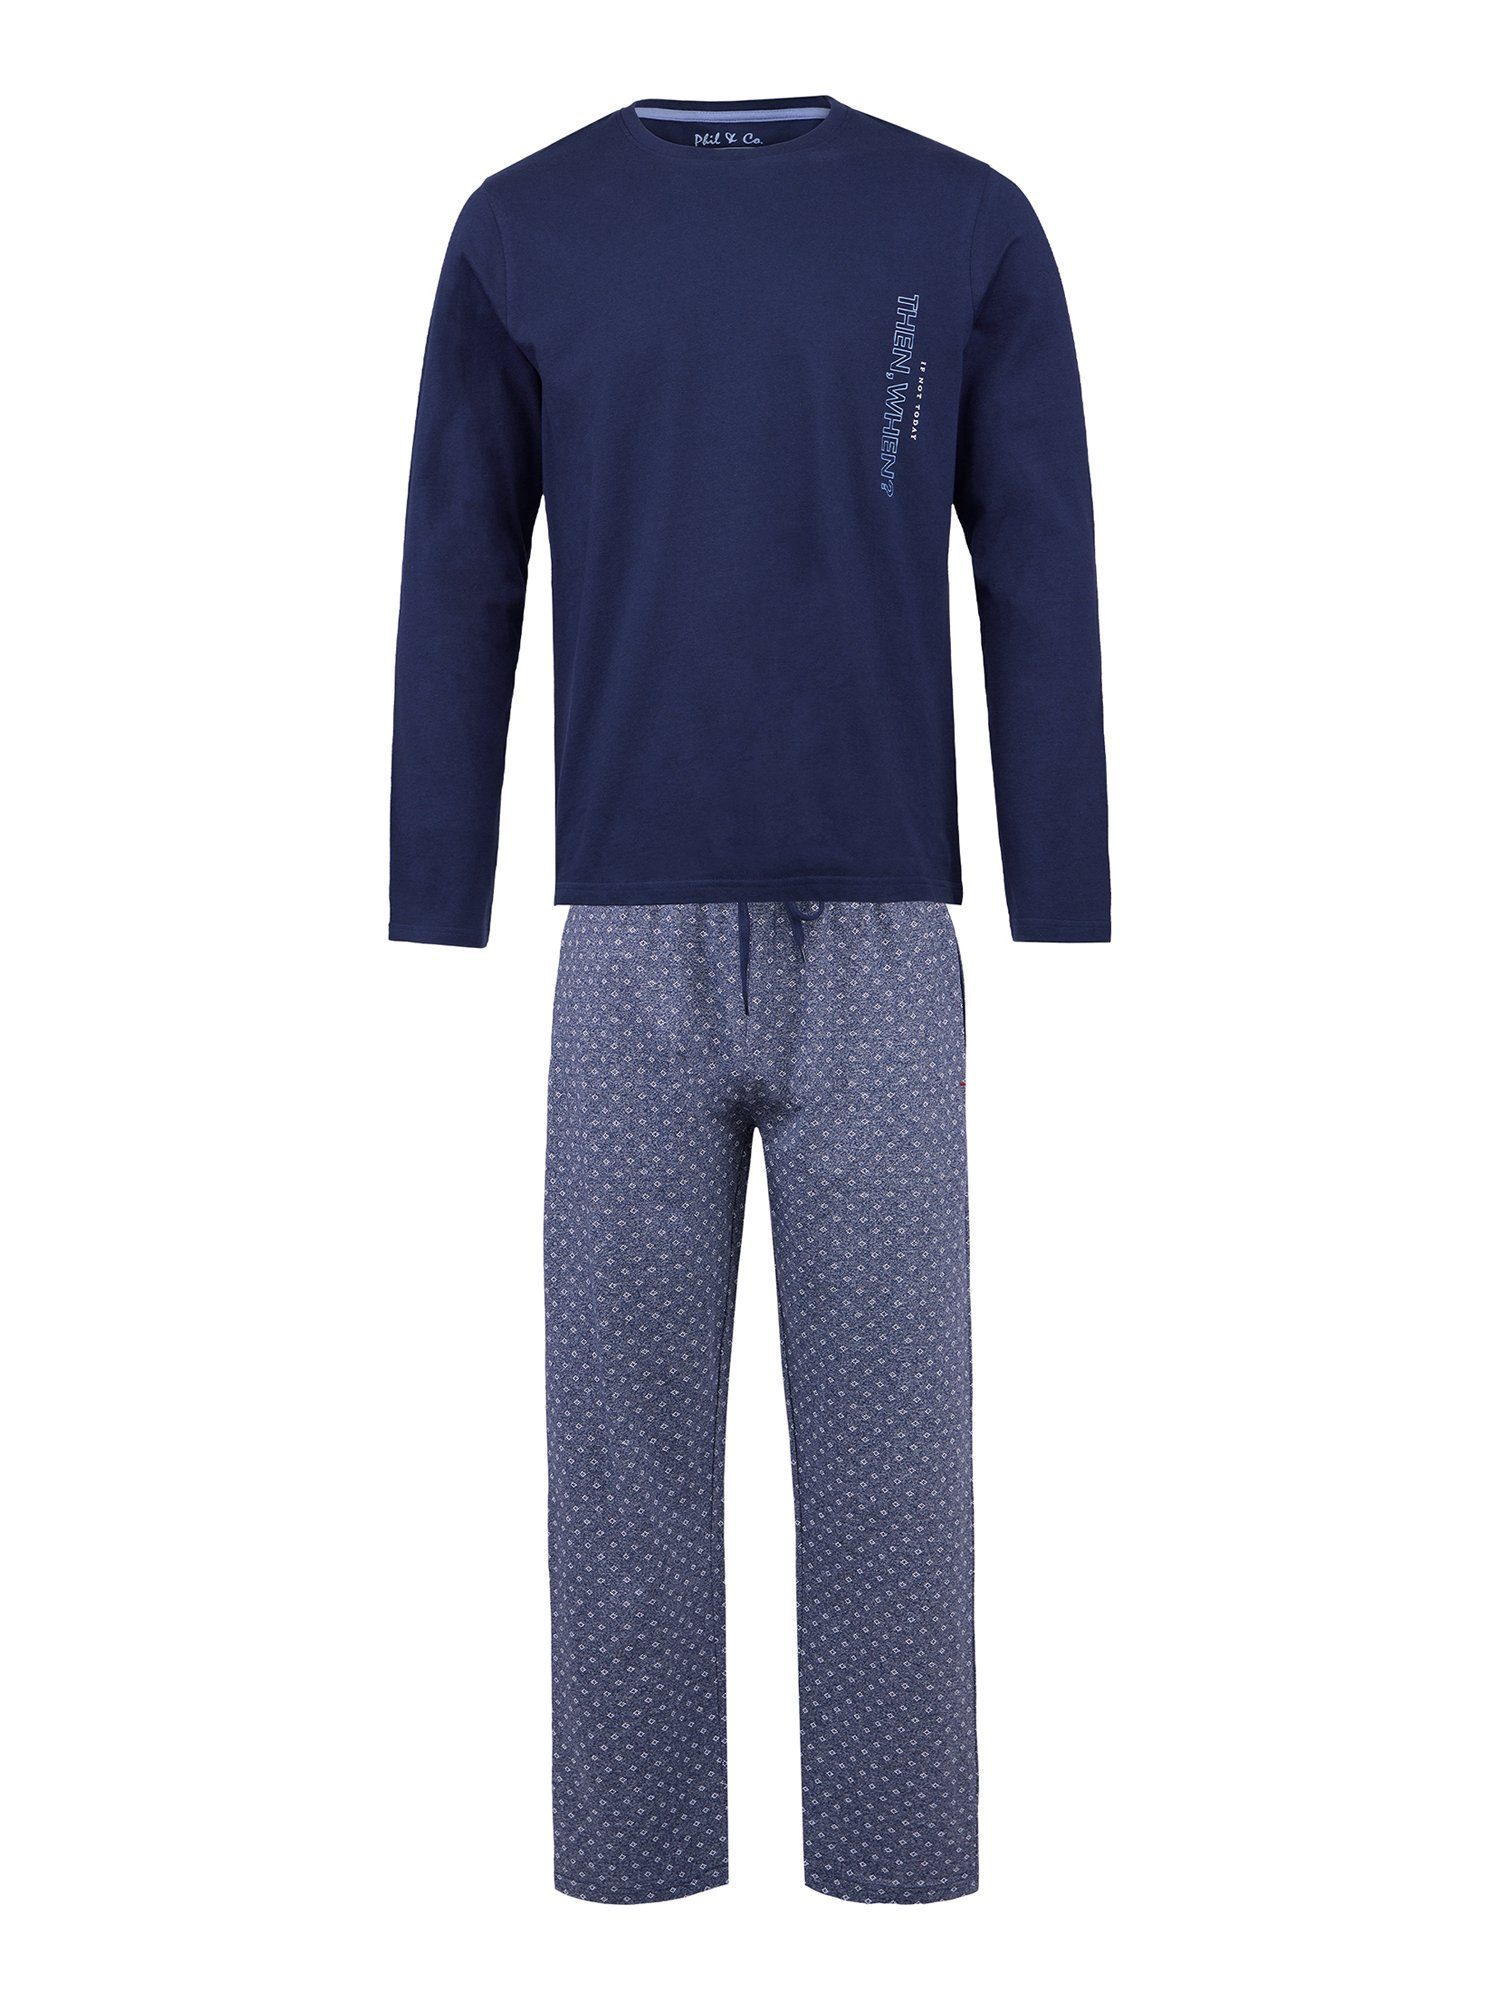 Phil & Co. Pyjama Special (1 tlg) Schlafanzug Langarm bequem blau-grau